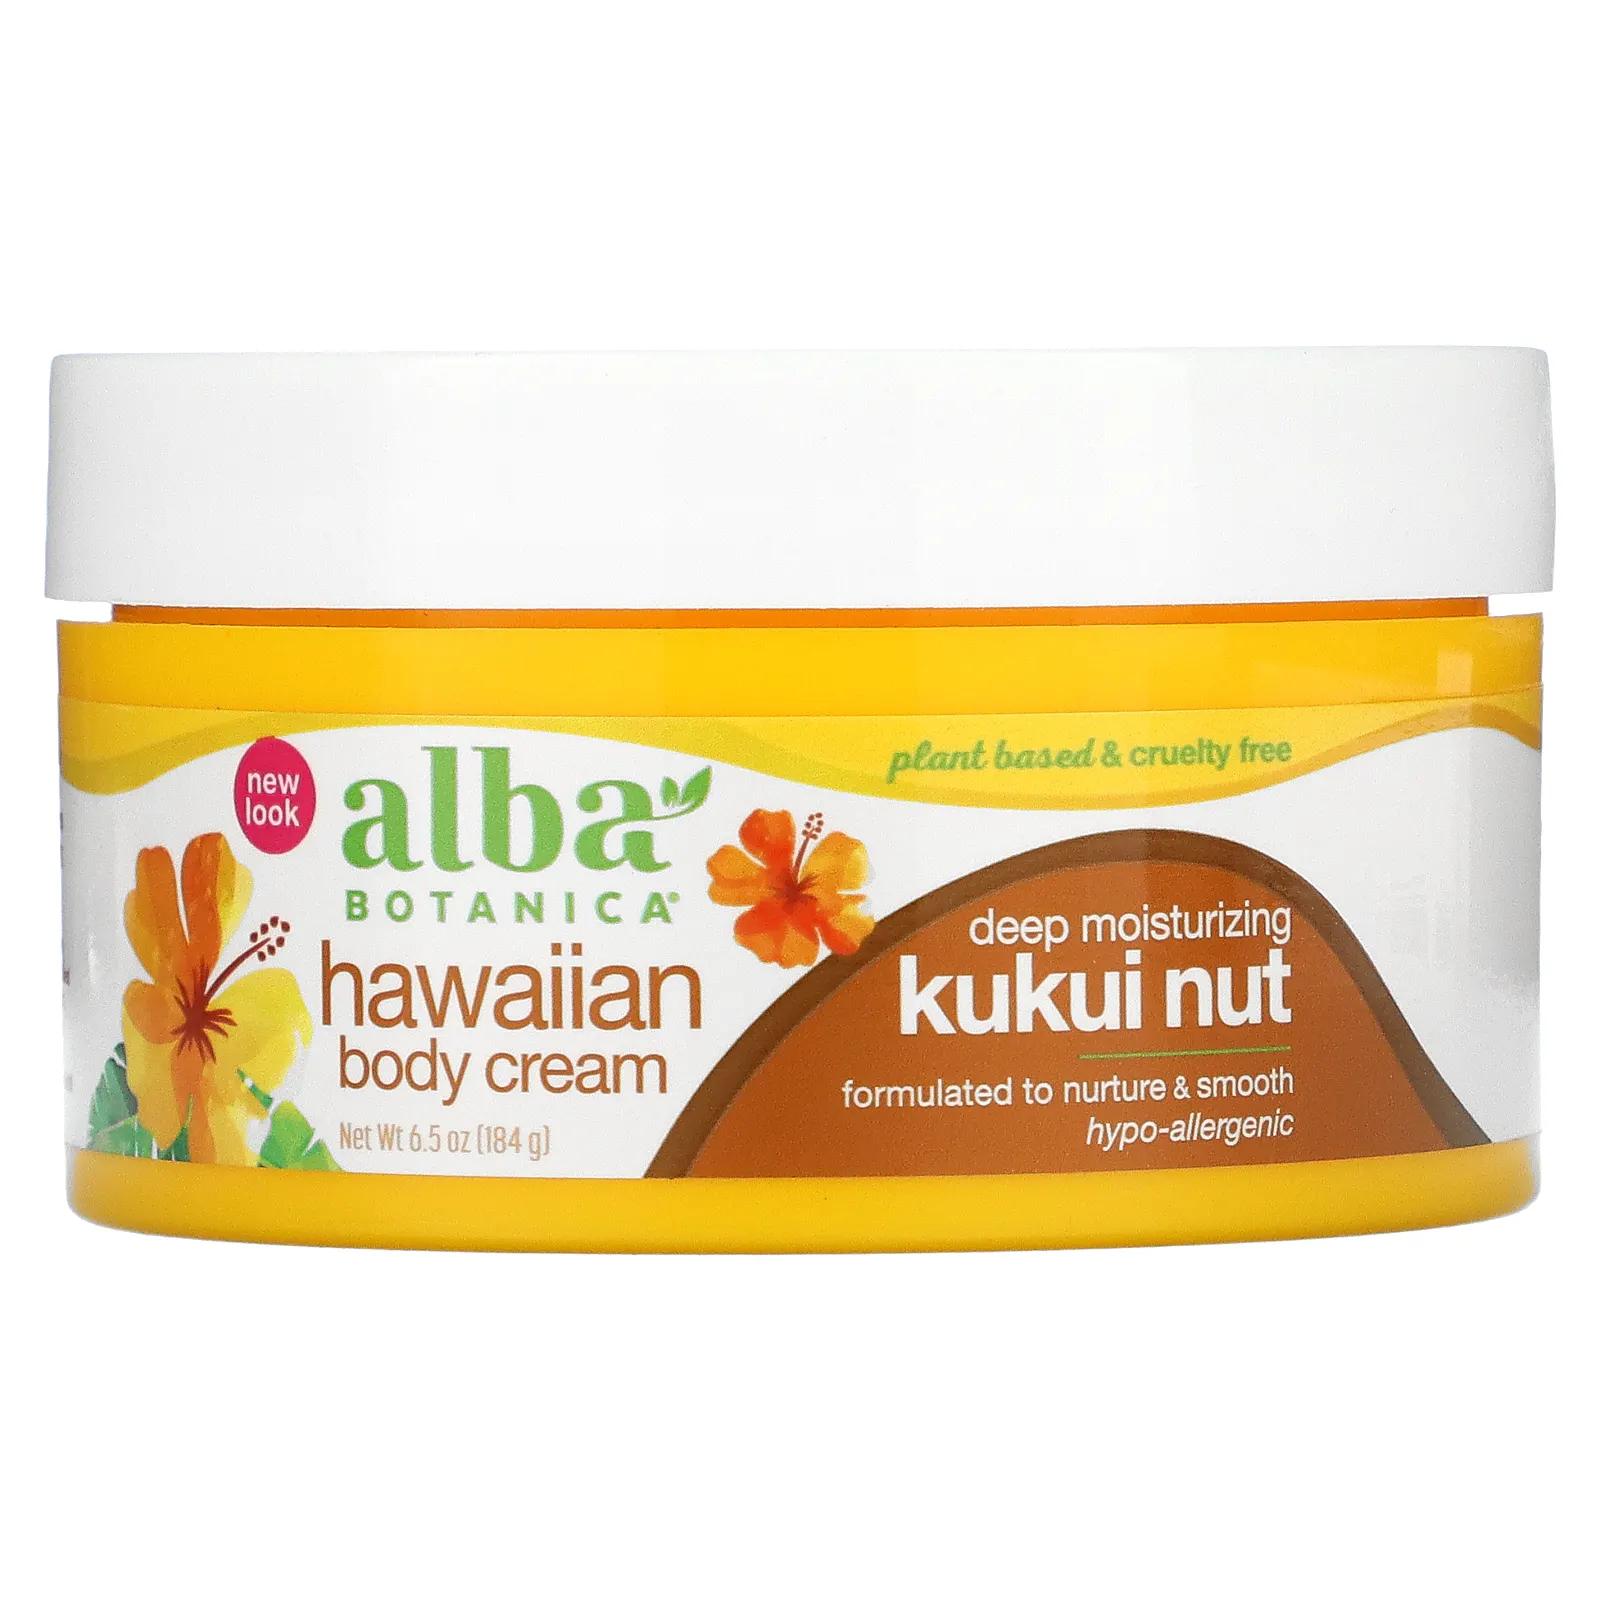 Alba Botanica Гавайский крем для тела орех кукуи 184 г (6,5 унции) alba botanica гавайское масло для тела орех кукуй 8 5 жид унций 251 мл